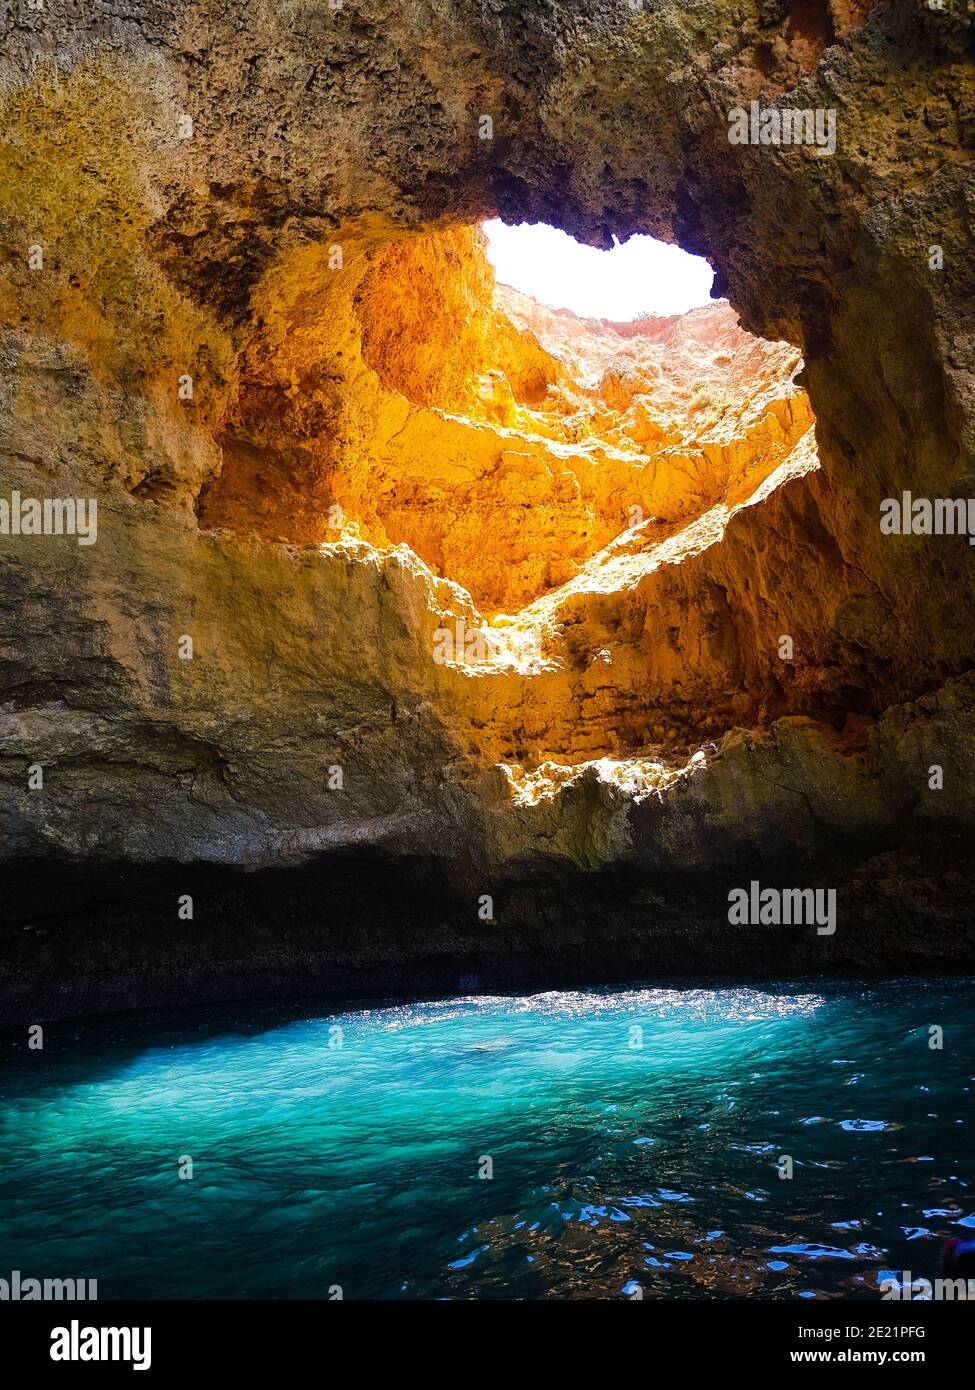 Il sole passa attraverso un buco della Grotta di Benagil, in Portogallo, dando uno spettacolare colore blu all'acqua di mare. Foto Stock